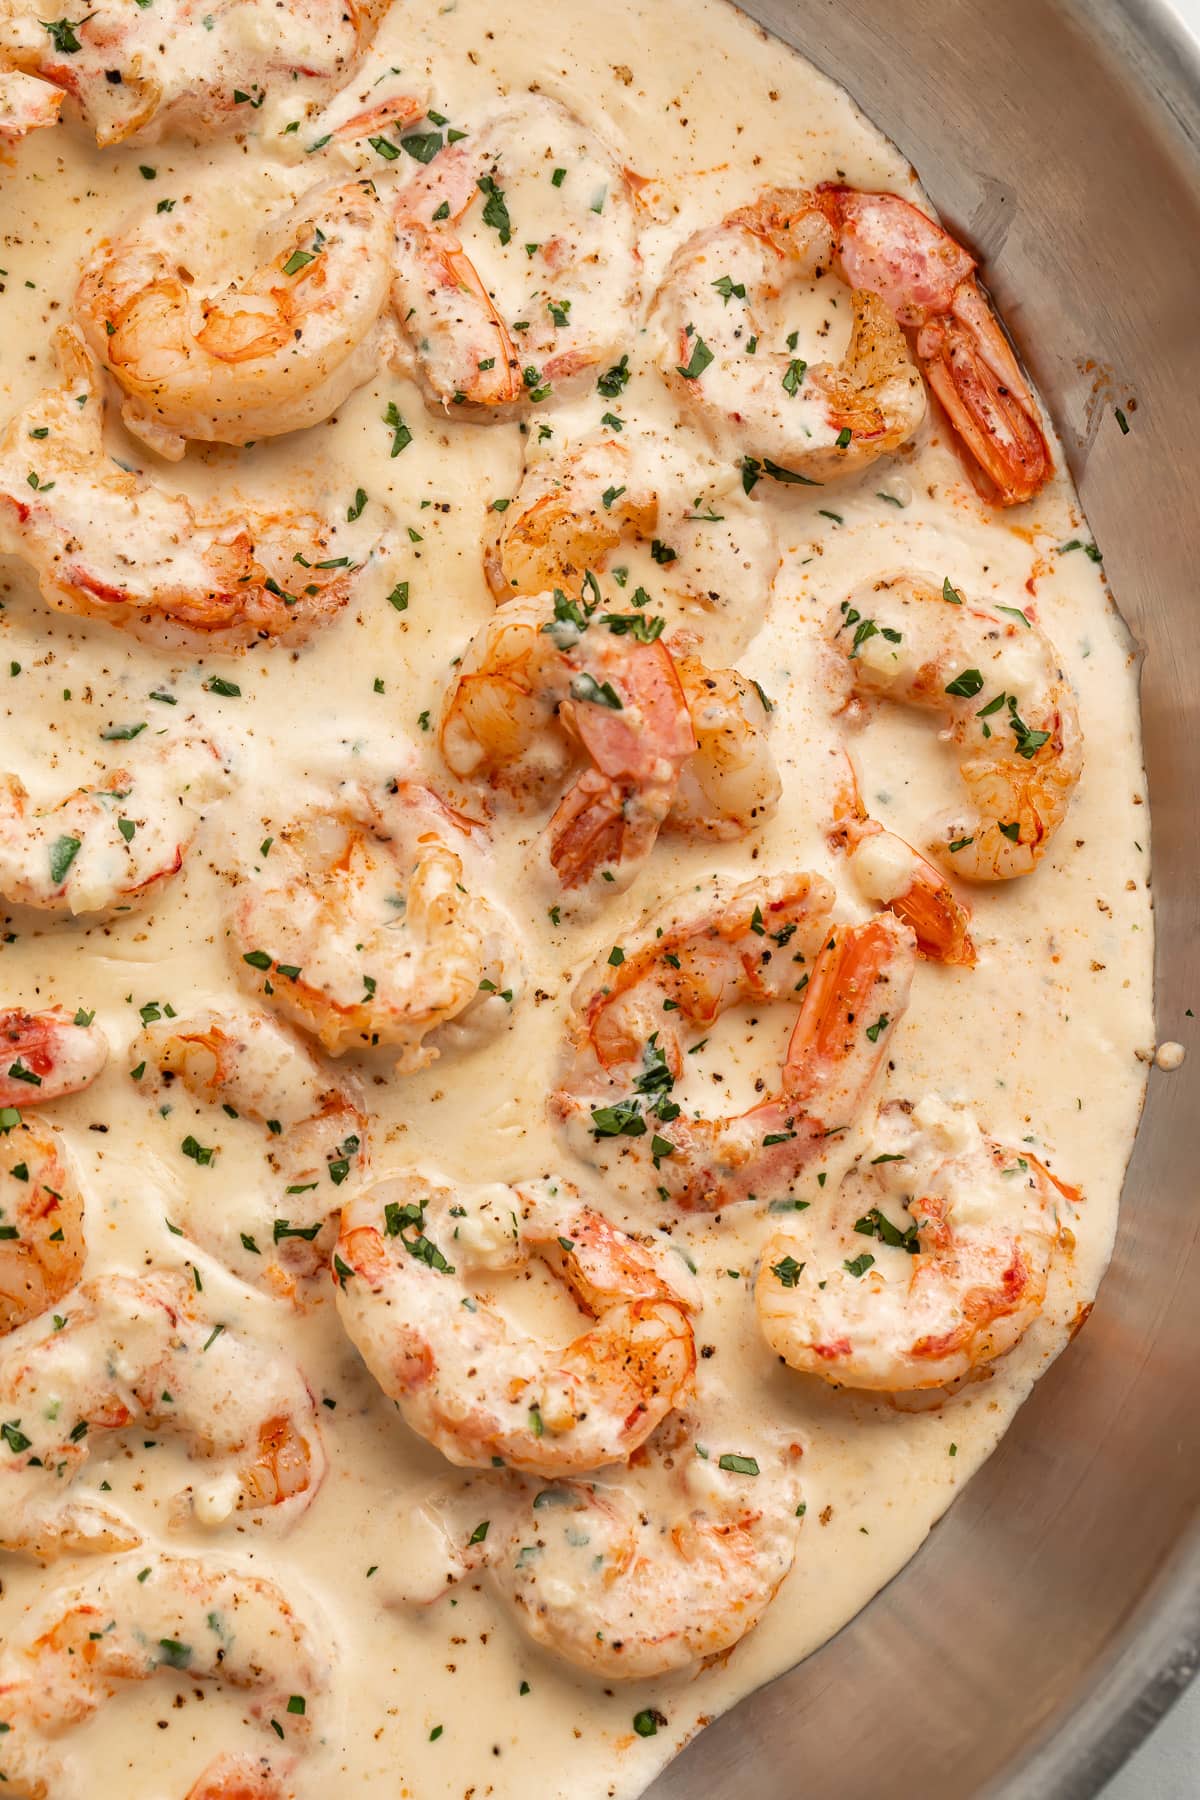 Shrimp in Cream Sauce Recipe - Healthy Recipes Blog